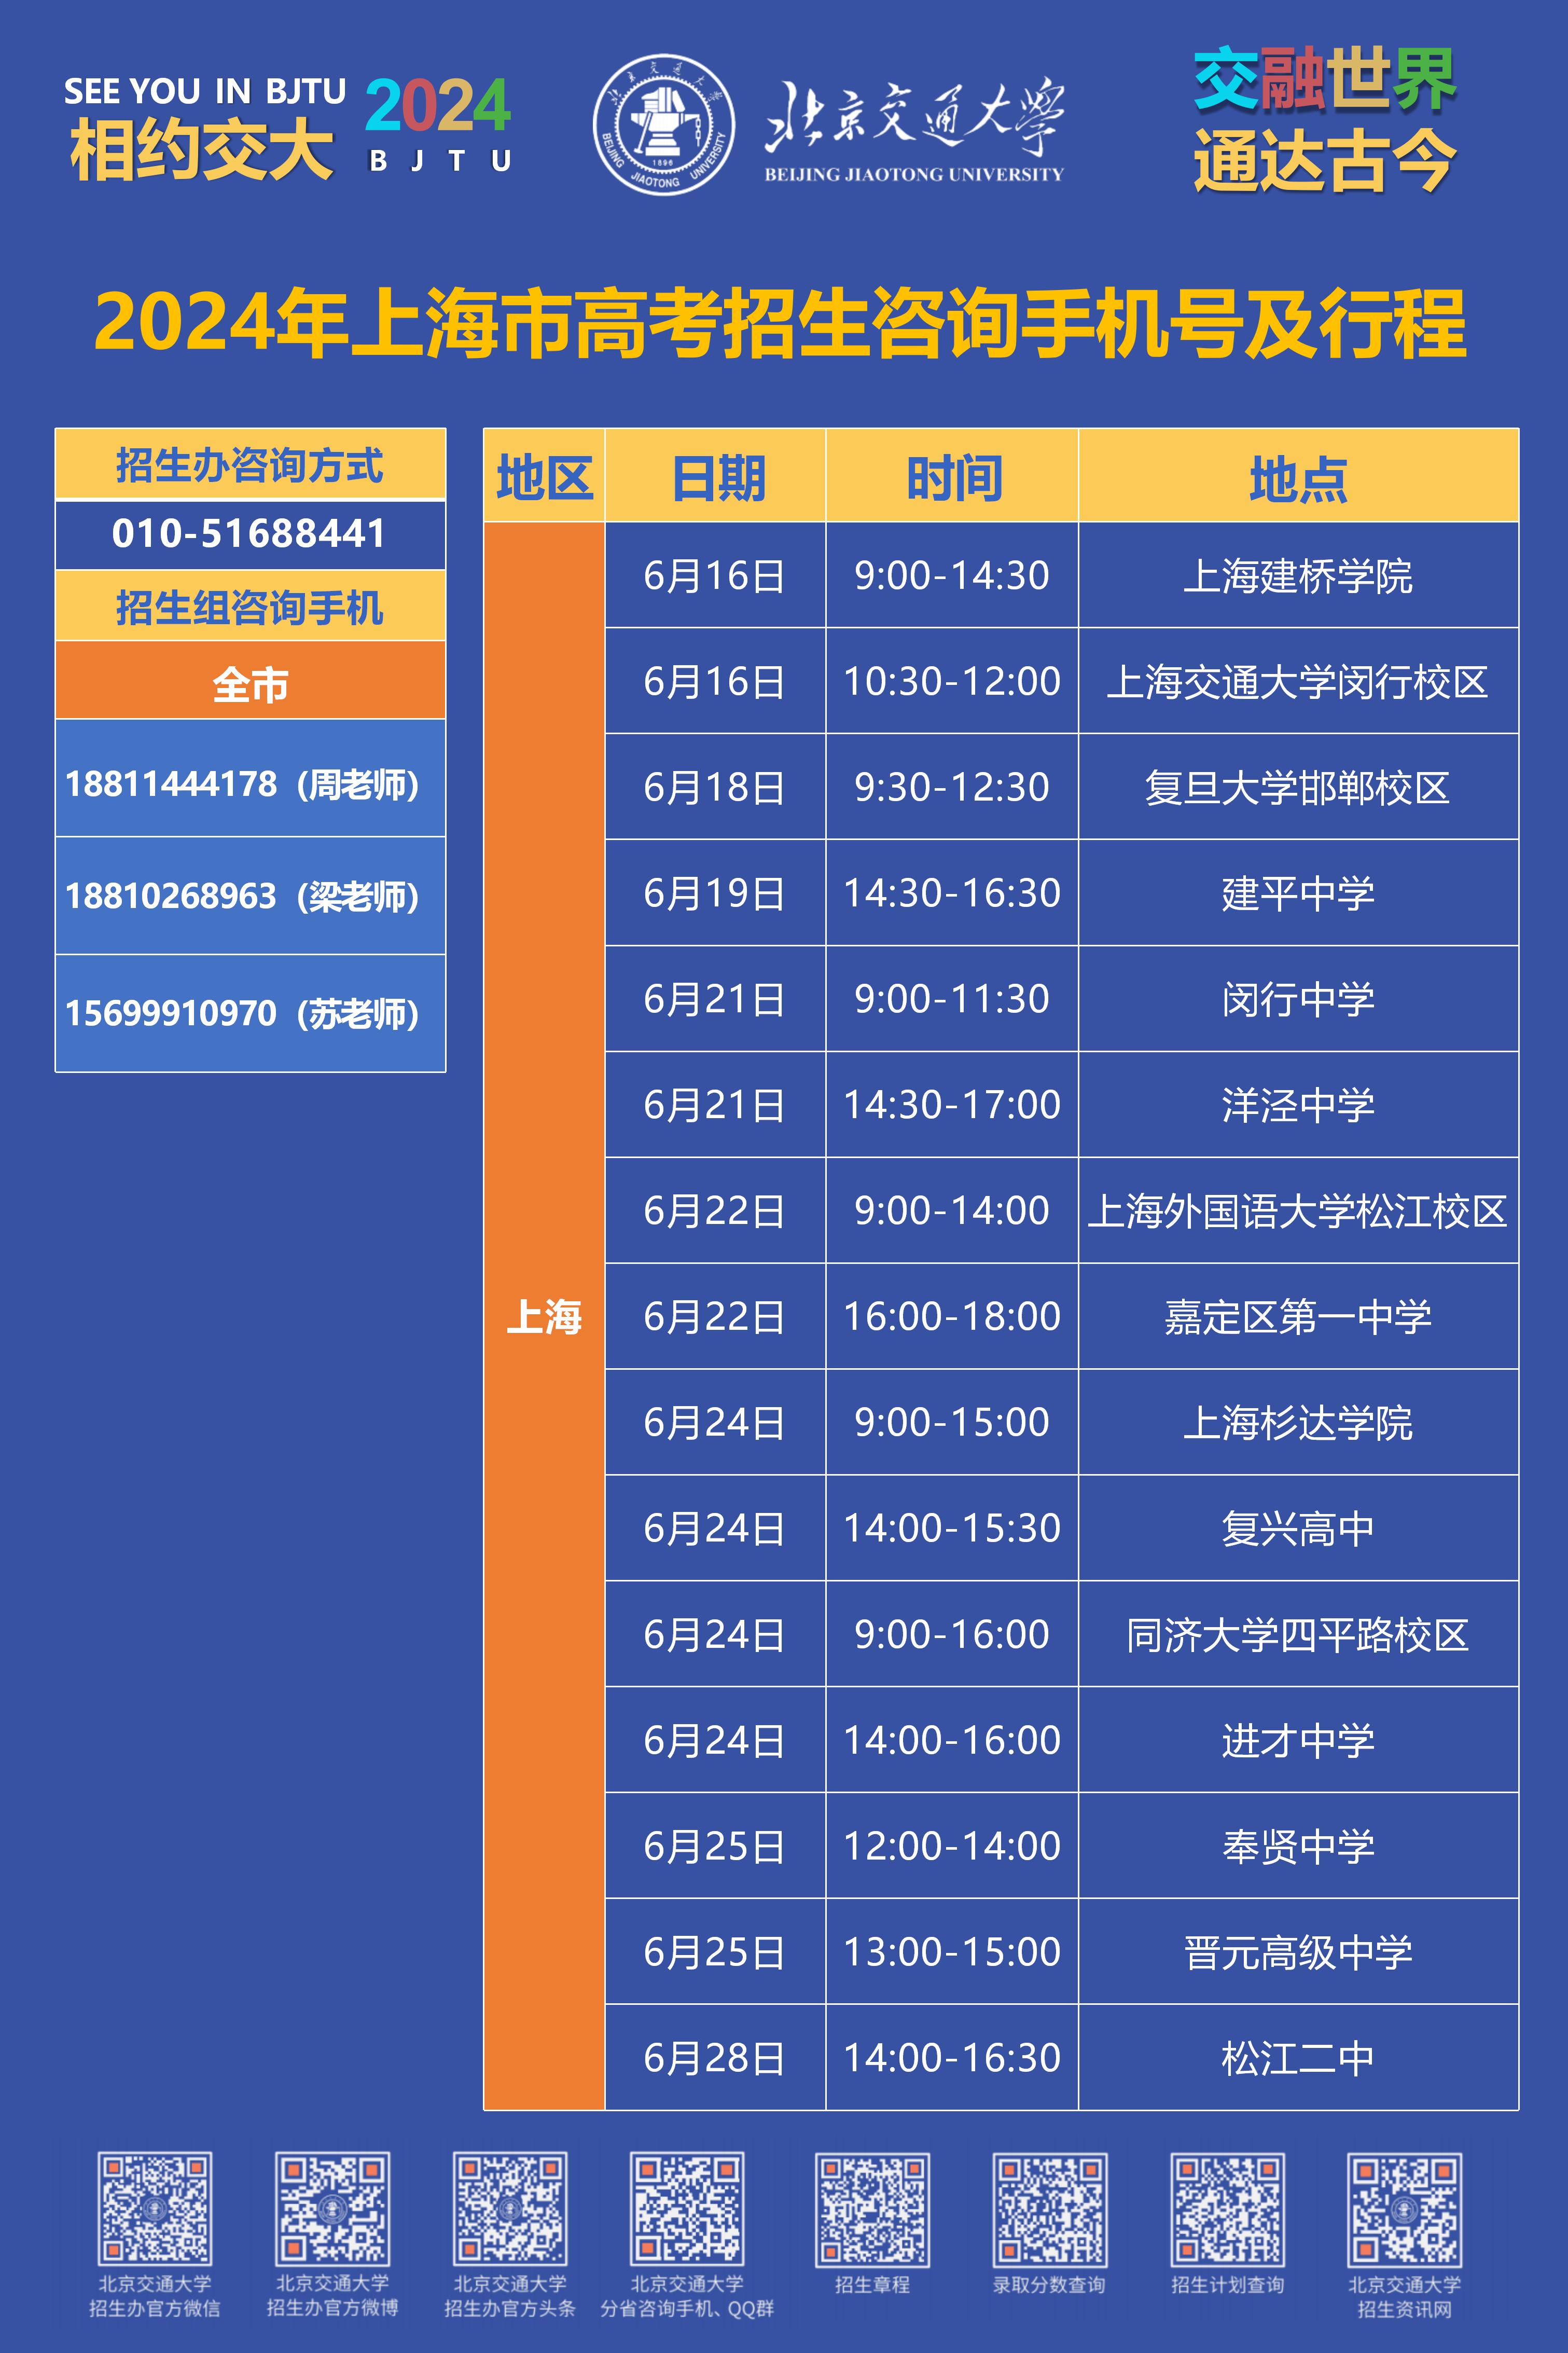 上海组2024高考招生咨询行程海报 [只读]_01.jpg